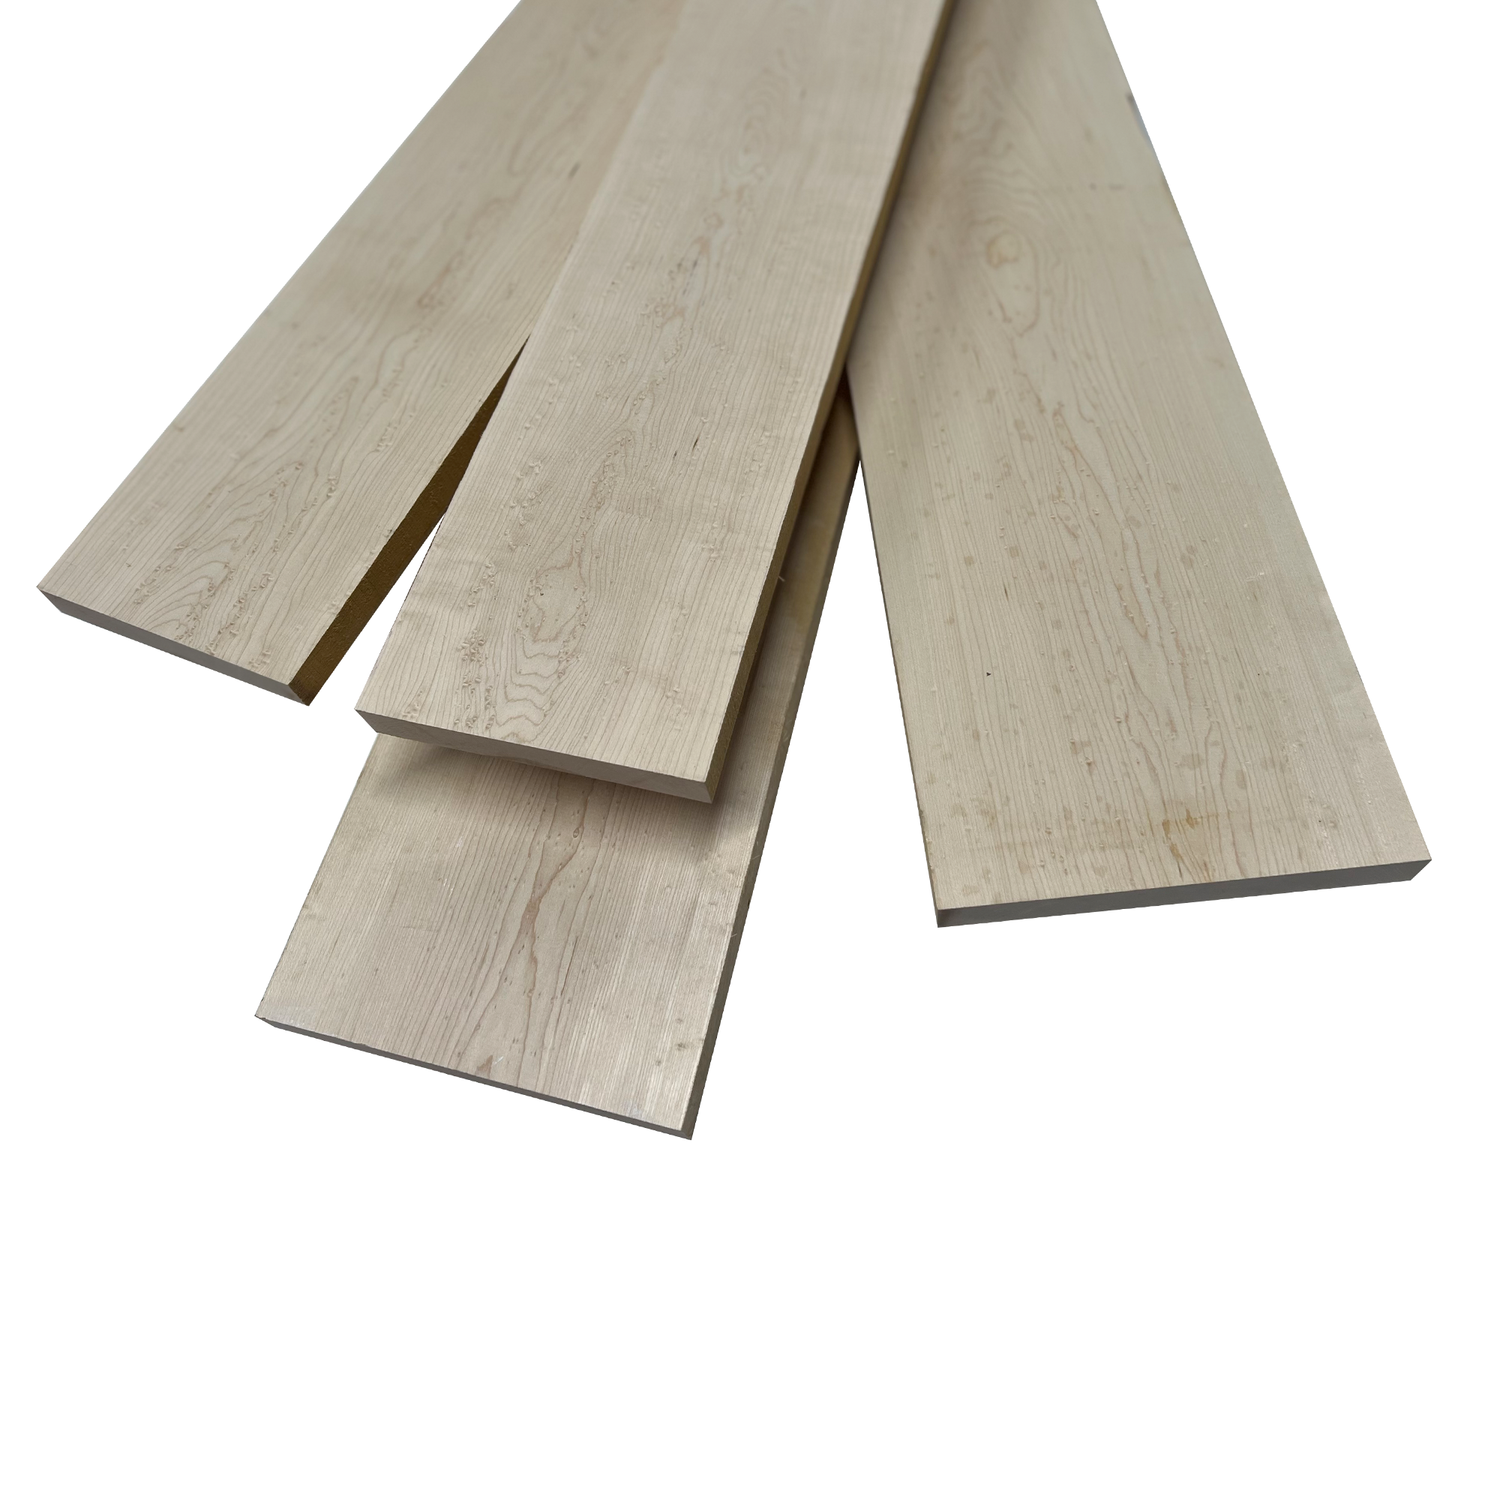 10 Board Feet - 4/4&quot; Birdseye Maple Lumber Boards - Exotic Wood Zone - Buy online Across USA 